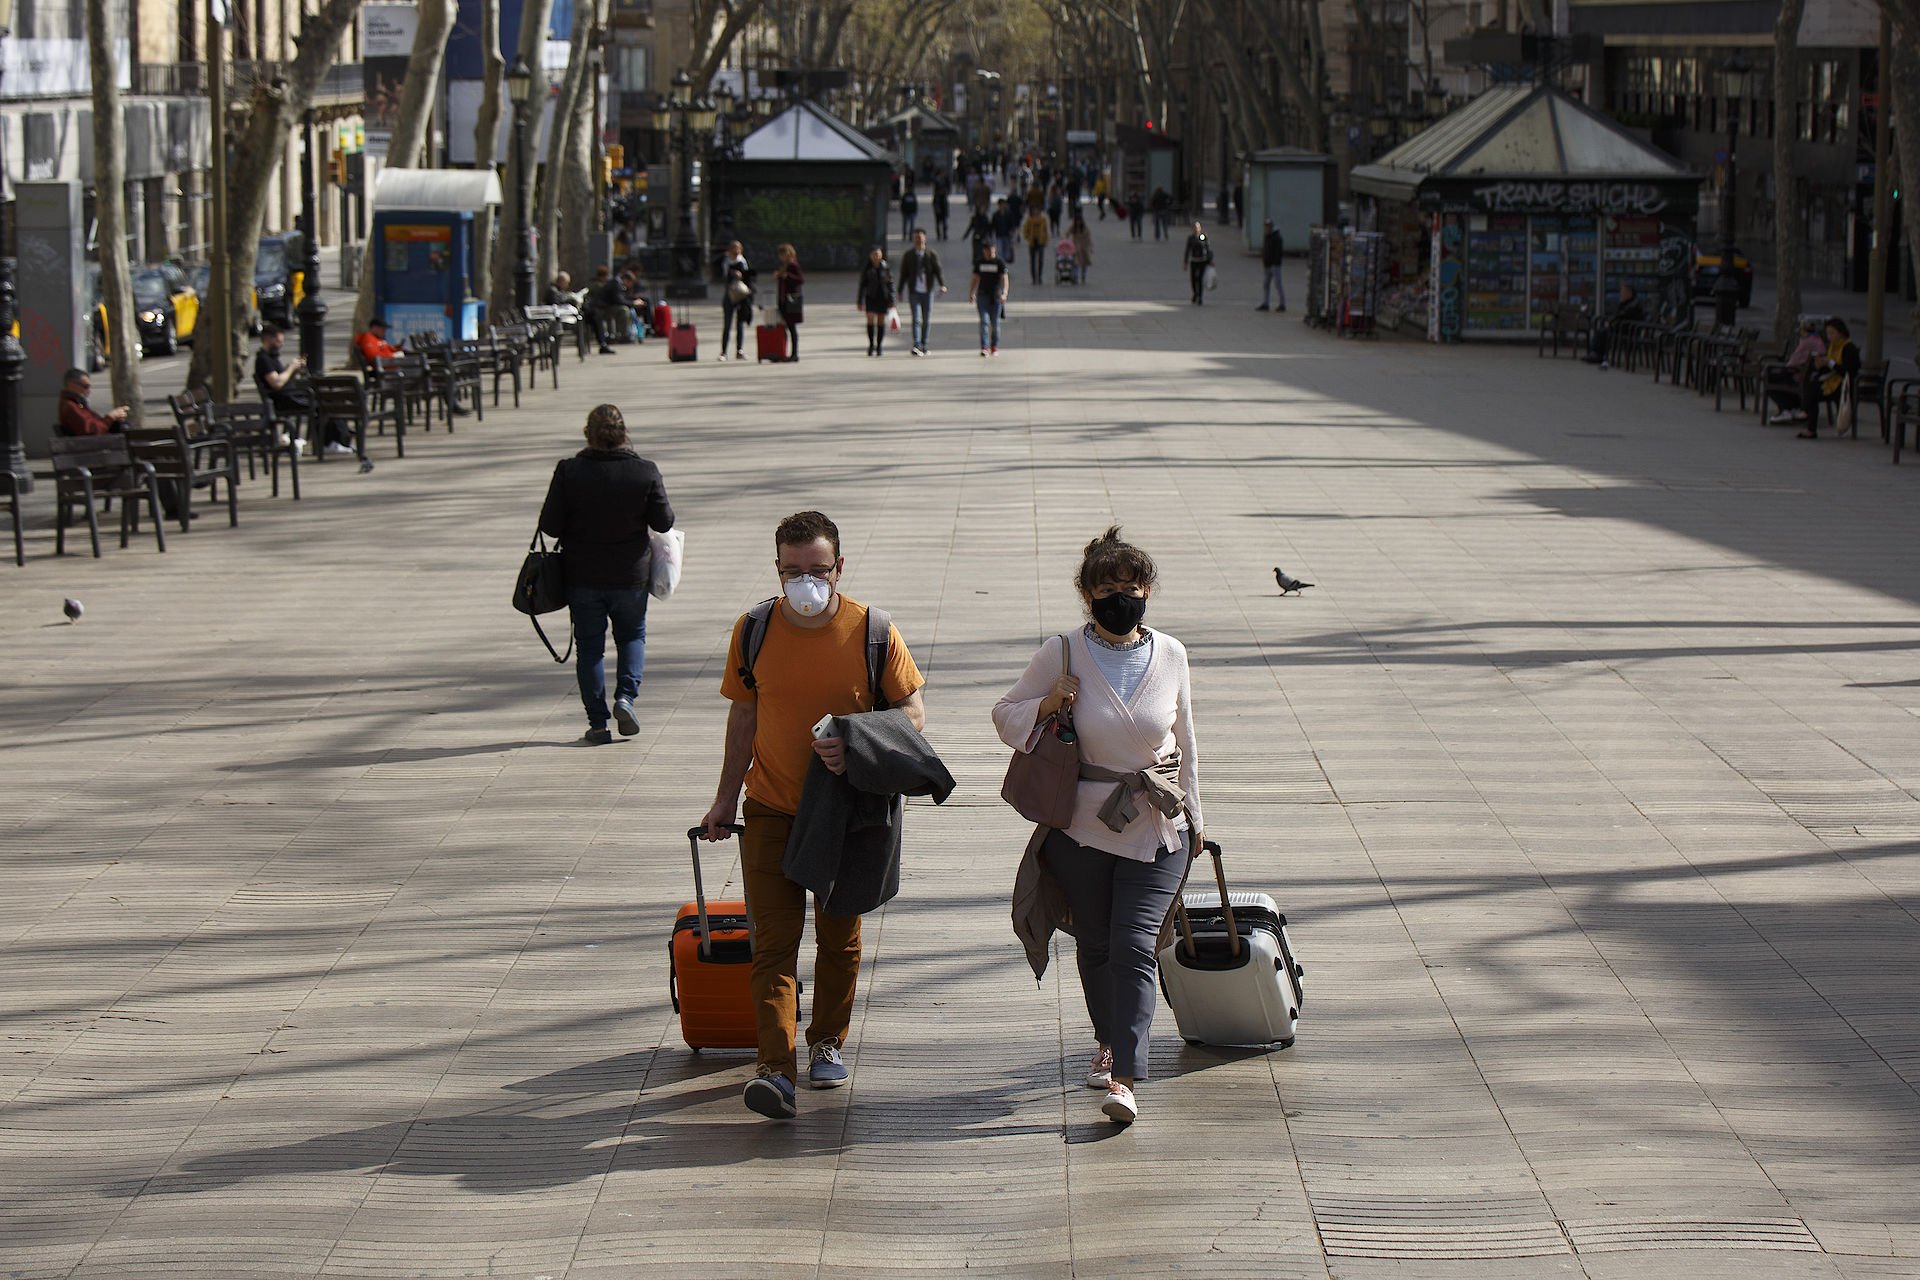 La despesa turística cau gairebé un 80% a Catalunya aquest any